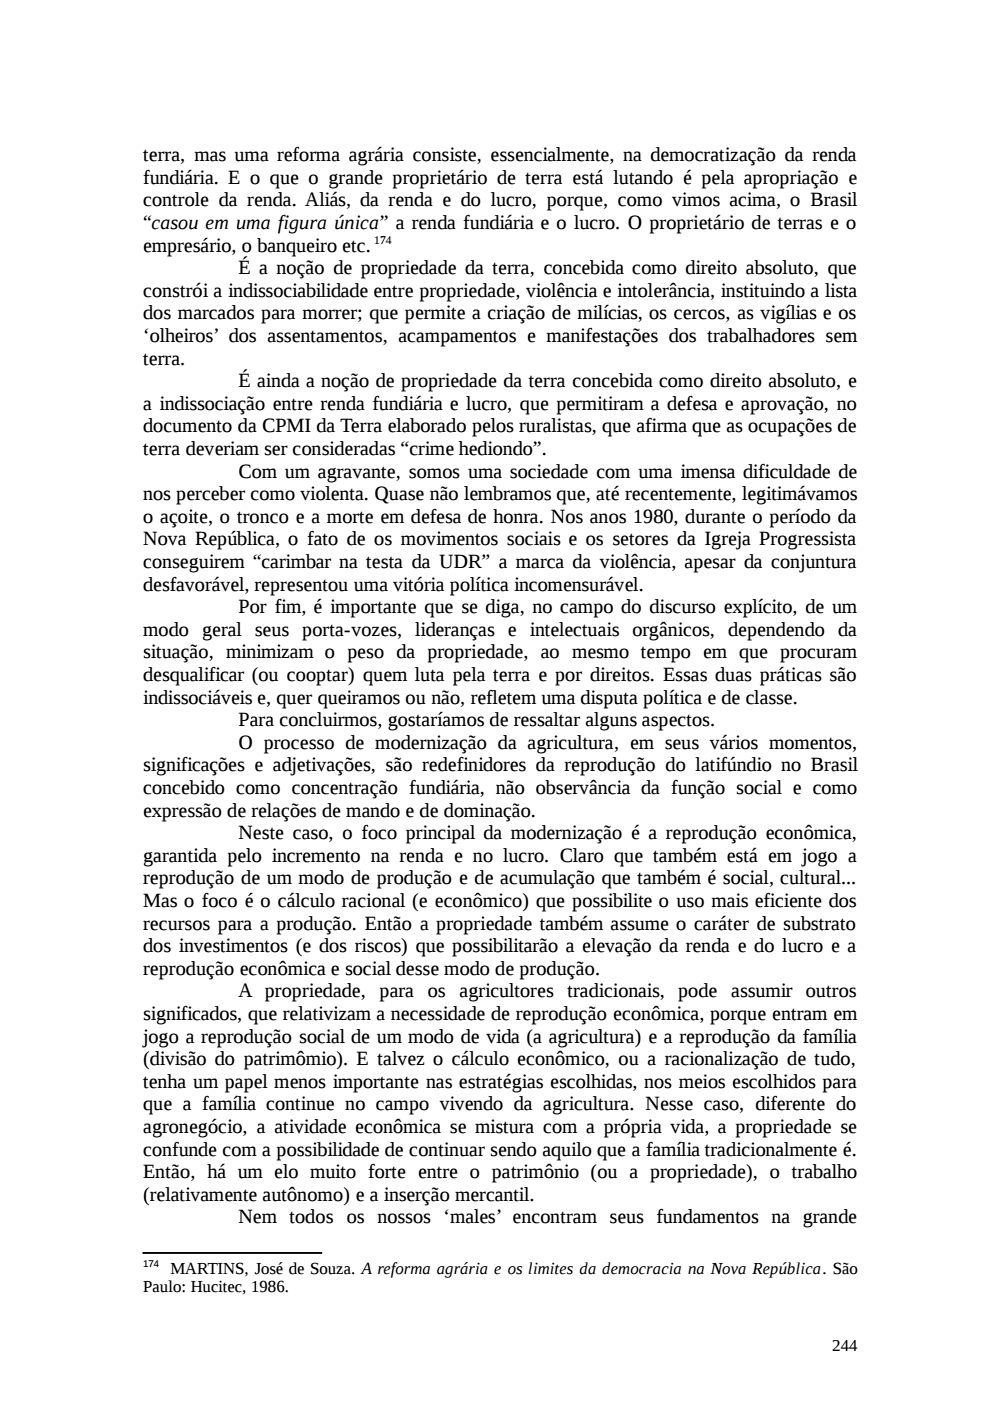 Page 244 from Relatório final da comissão